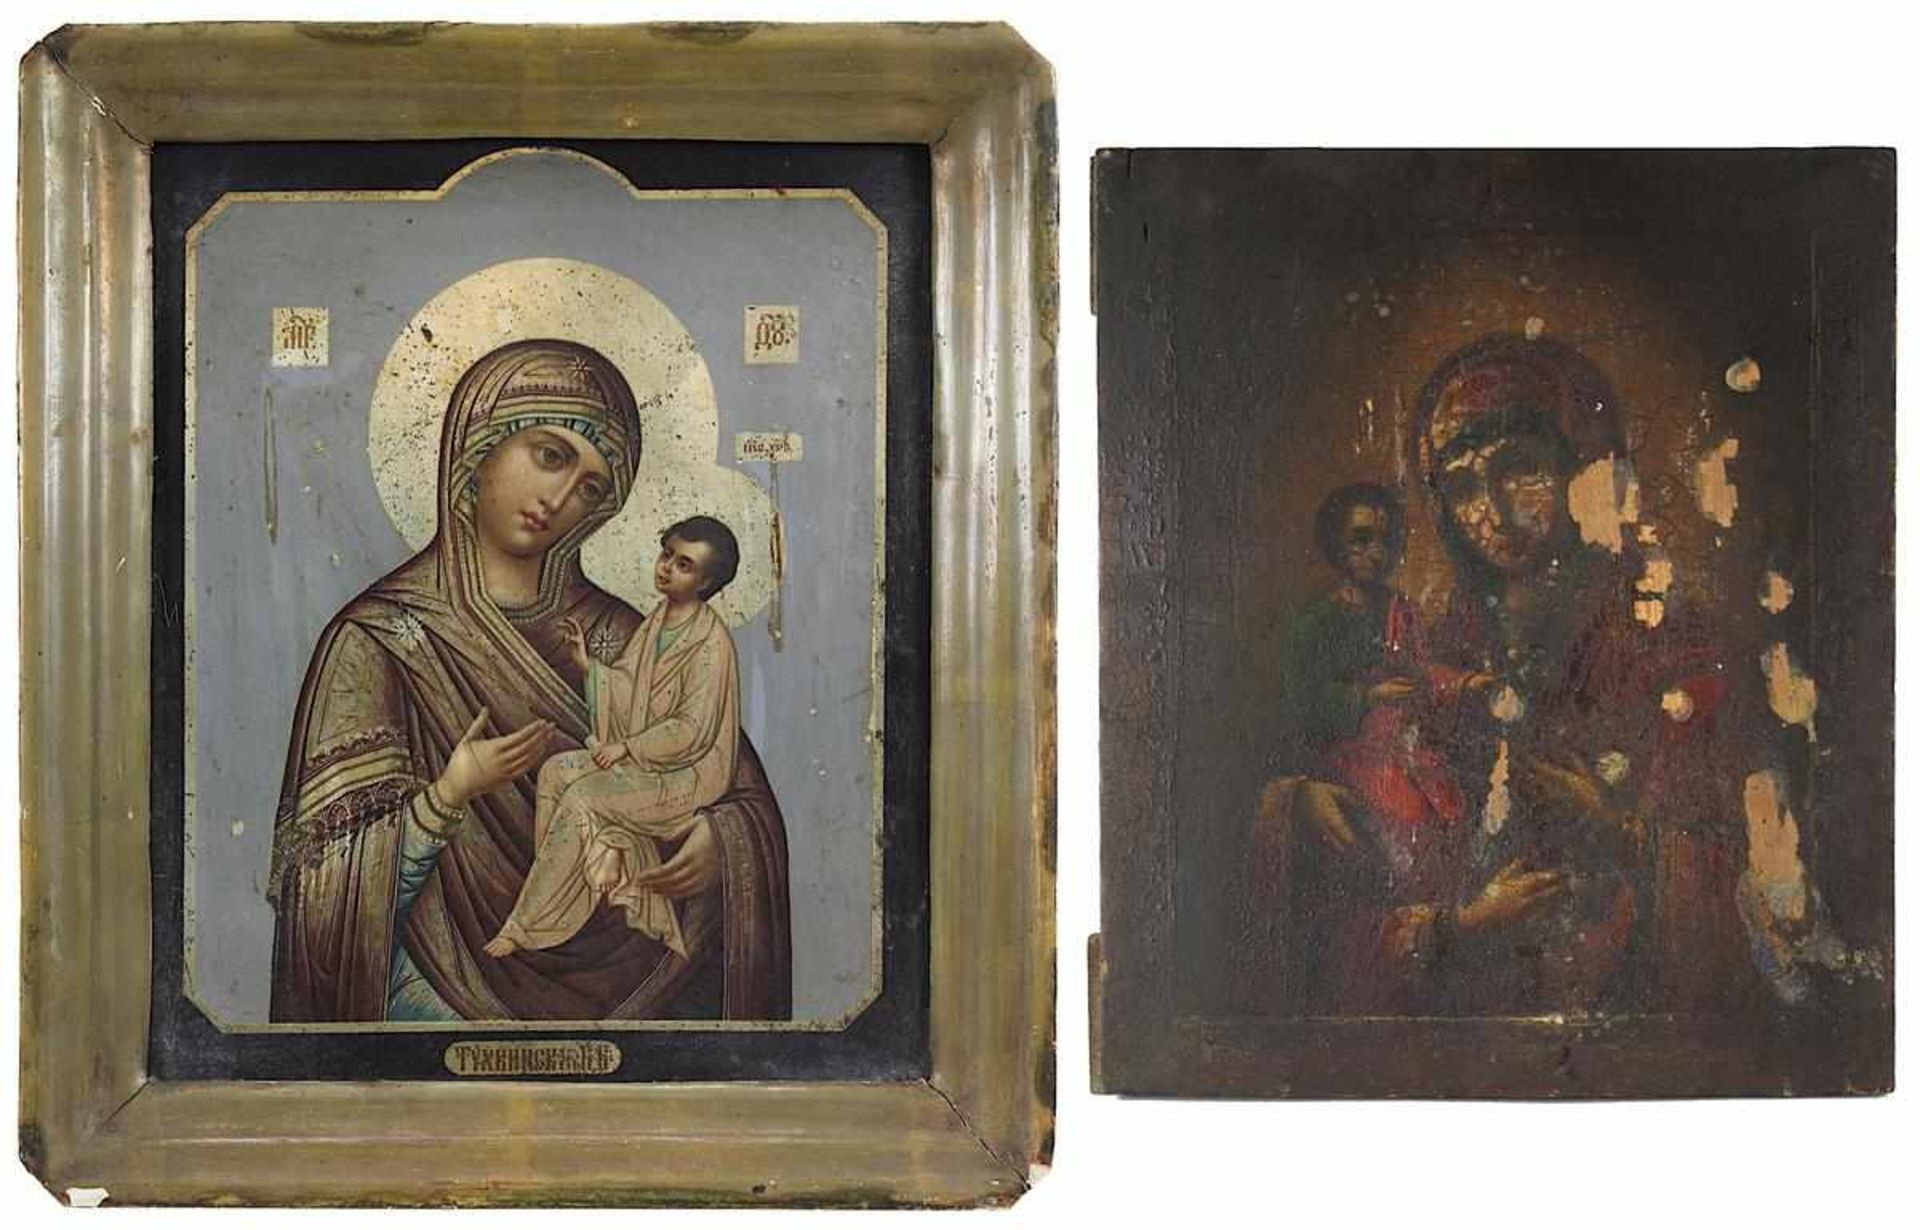 Zwei Ikonen mit Gottesmutter Hodegetria - Darstellungen, Russland 2. H. 19. Jh.: eine Ikone mit